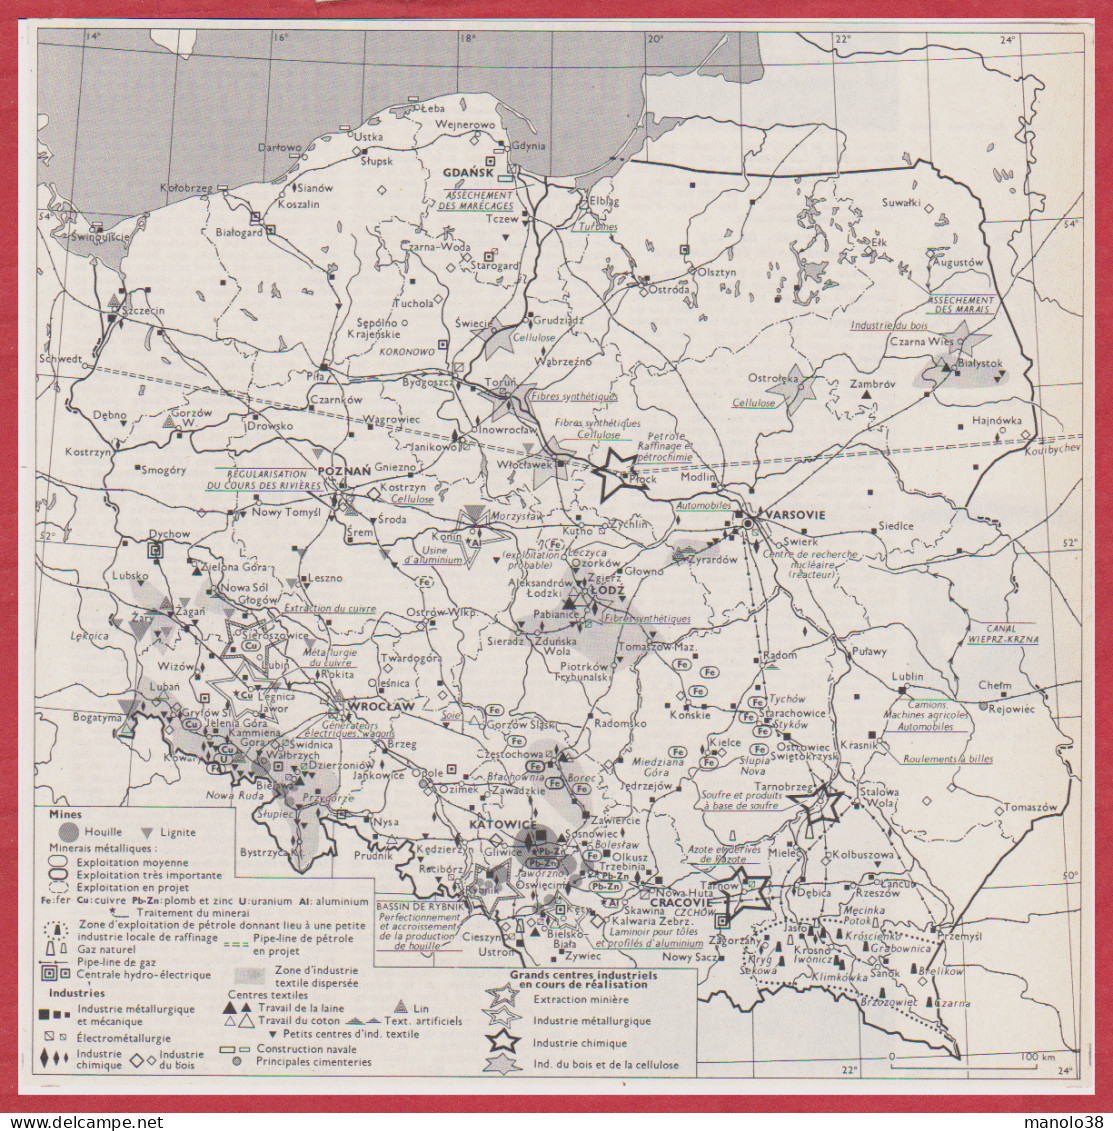 Pologne. Carte économique. Mines, Industries, Grands Centres Industriels En Cours De Réalisation. Larousse 1960. - Historical Documents